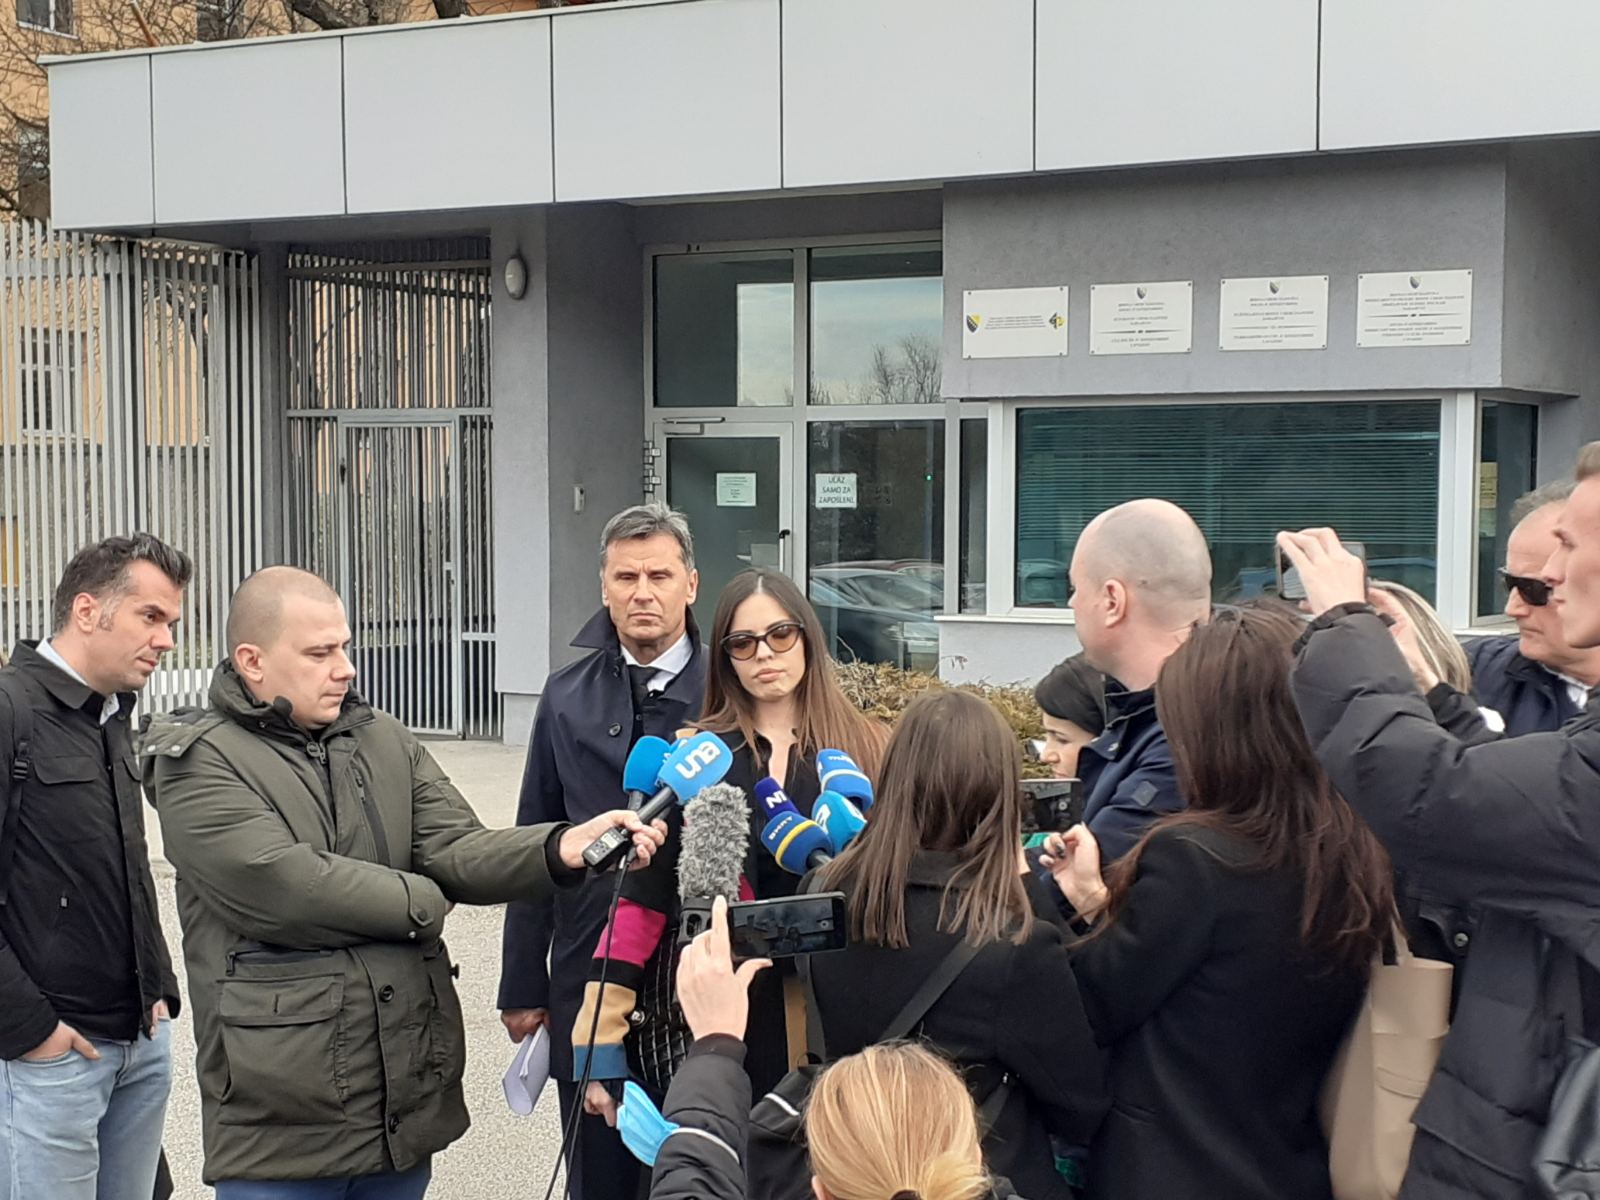 Završne riječi odbrane, Novalić tvrdi da je riječ o politički montiranom procesu